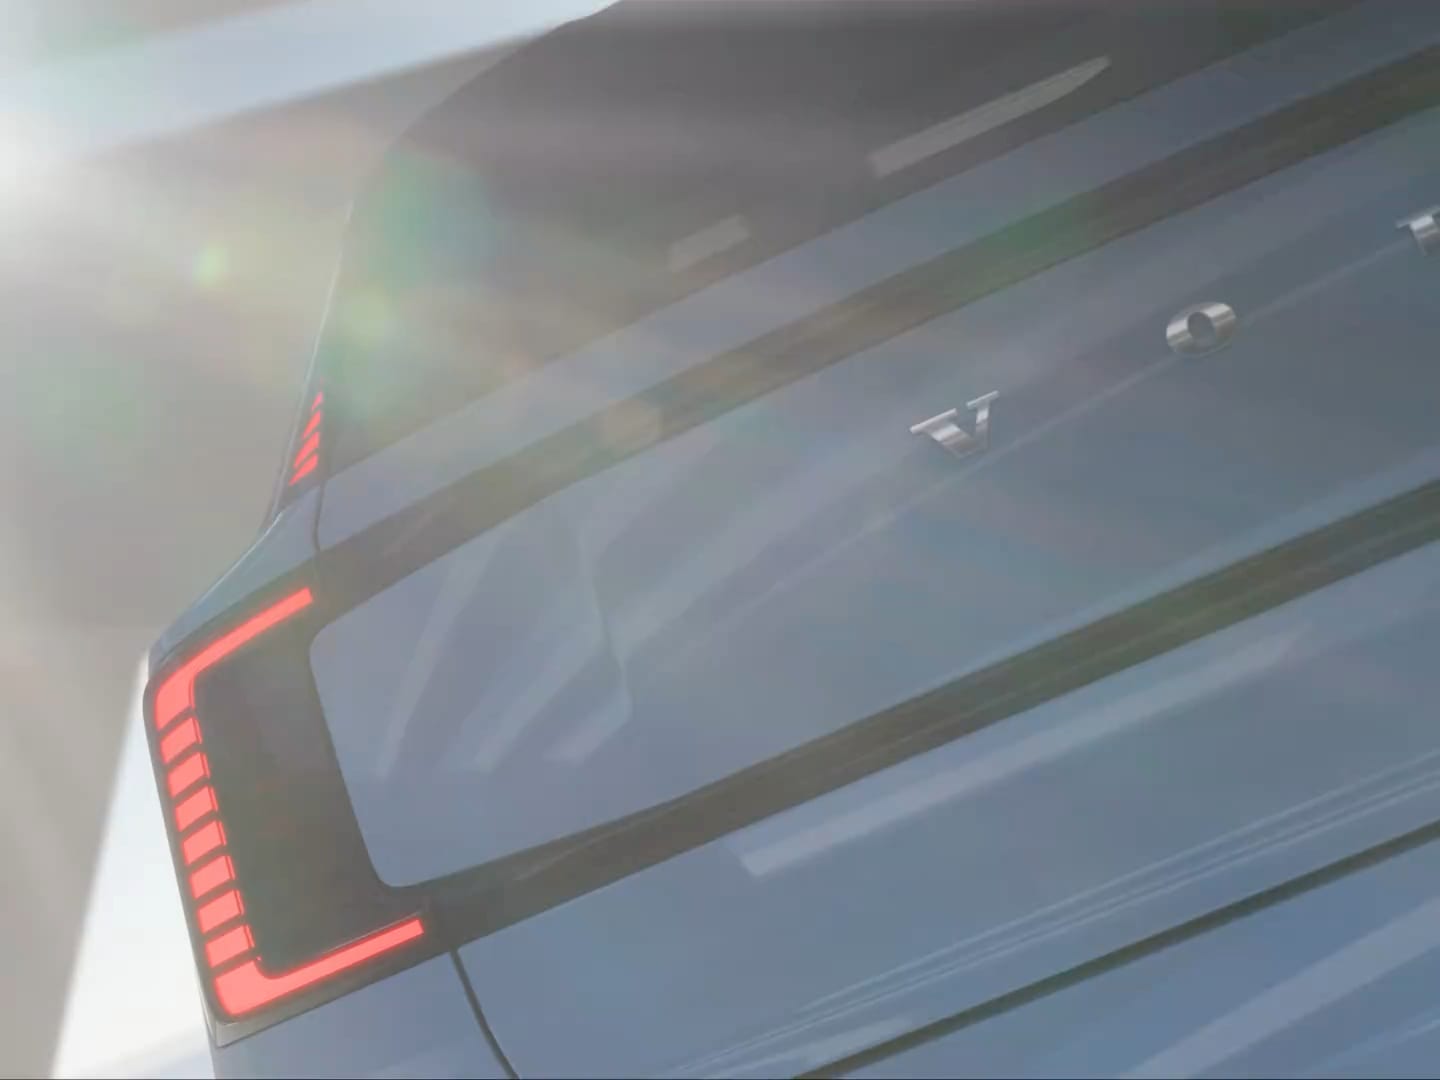 Die Rück- und Frontscheinwerfer eines fahrenden Volvo EX30, der von einer Leuchte auf dem Dach reflektiert wird.